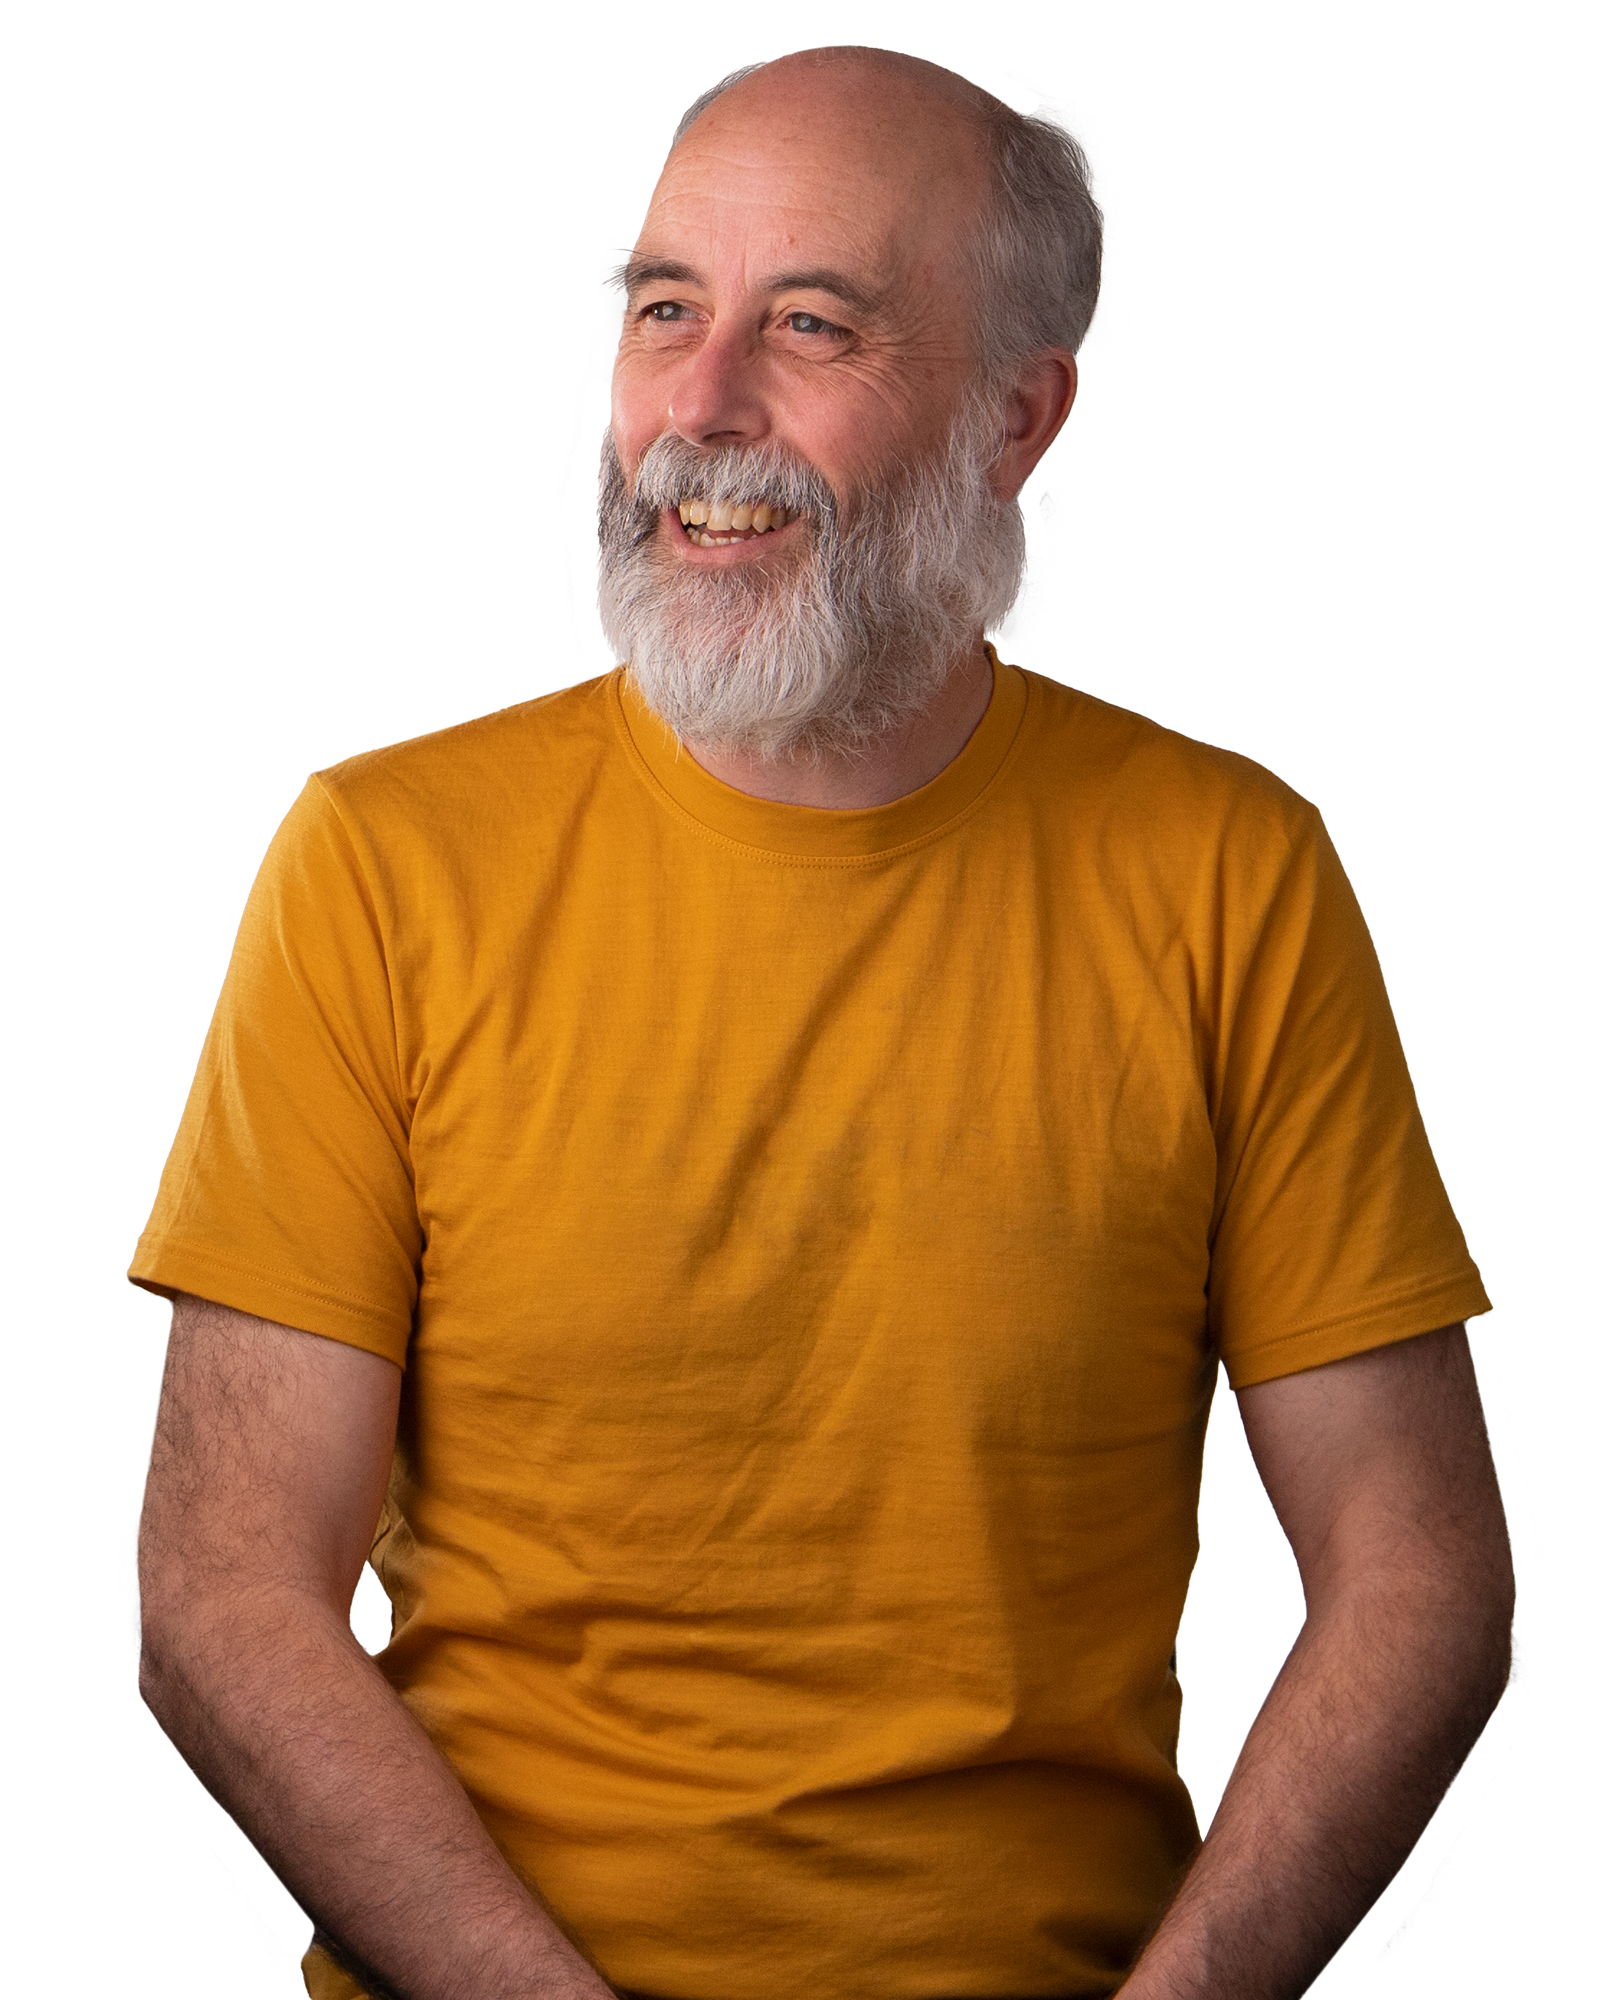 Man with beard wearing a yellow t-shirt